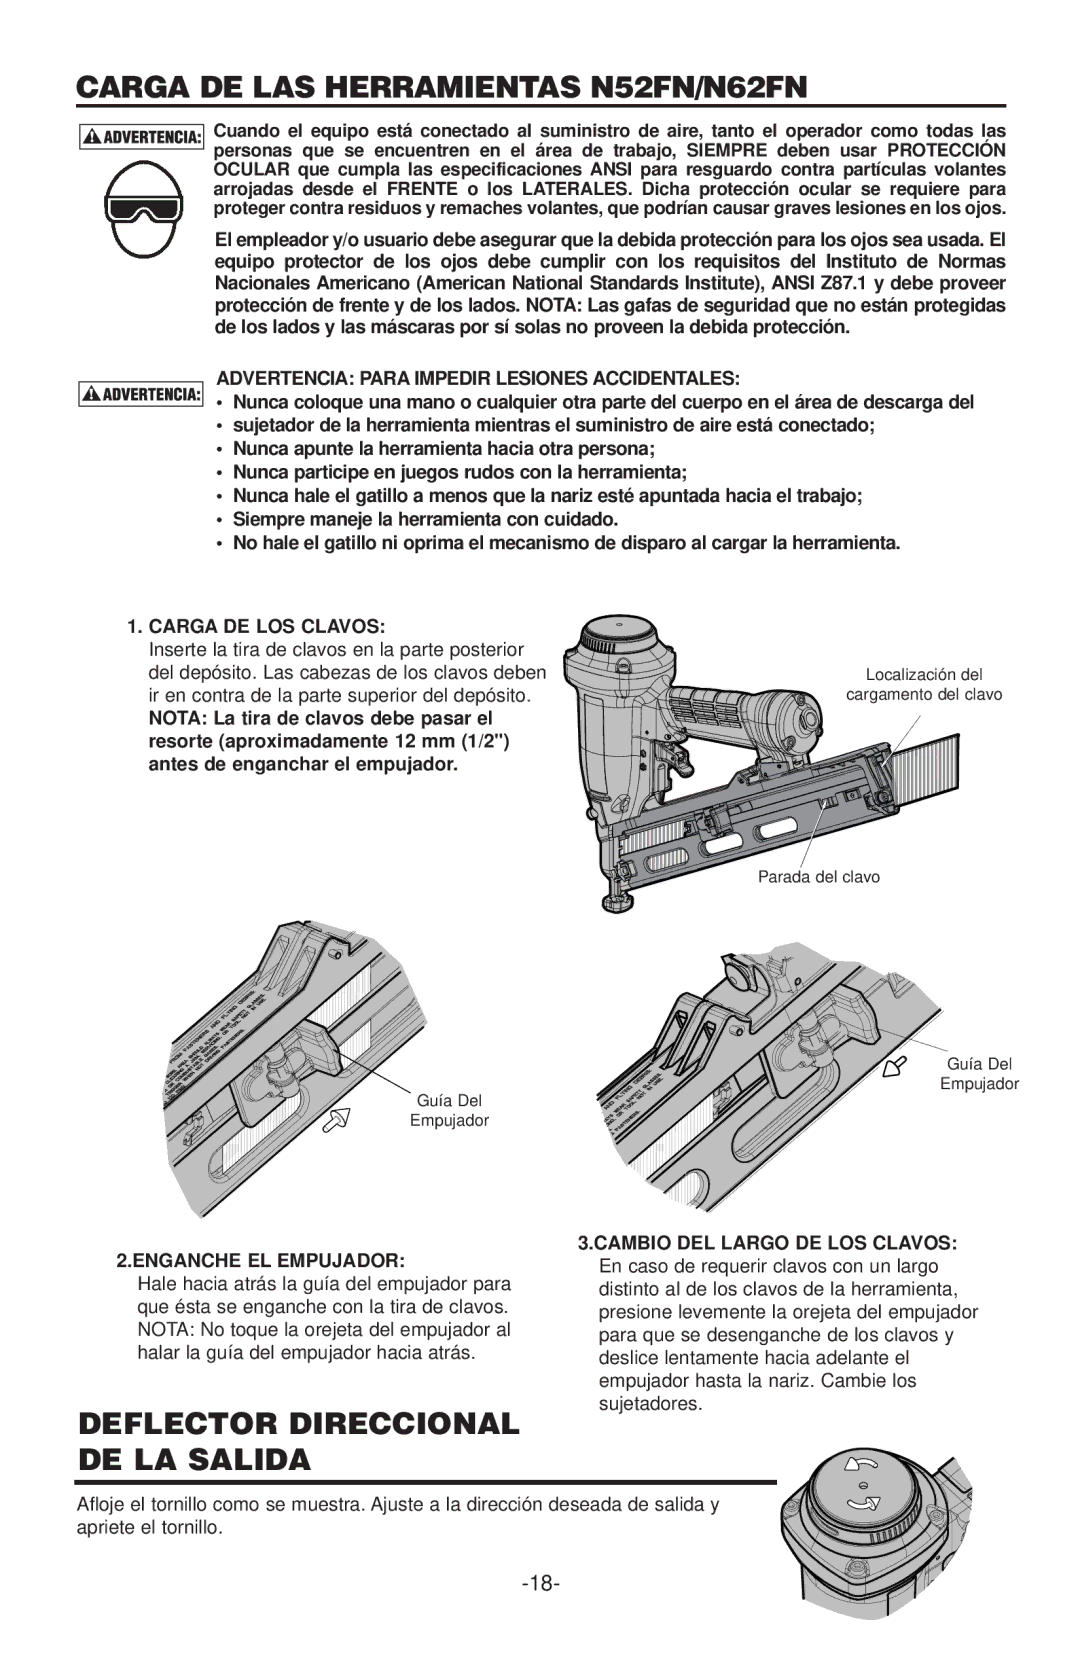 Quantaray manual Carga DE LAS Herramientas N52FN/N62FN, Deflector Direccional DE LA Salida, Carga DE LOS Clavos 